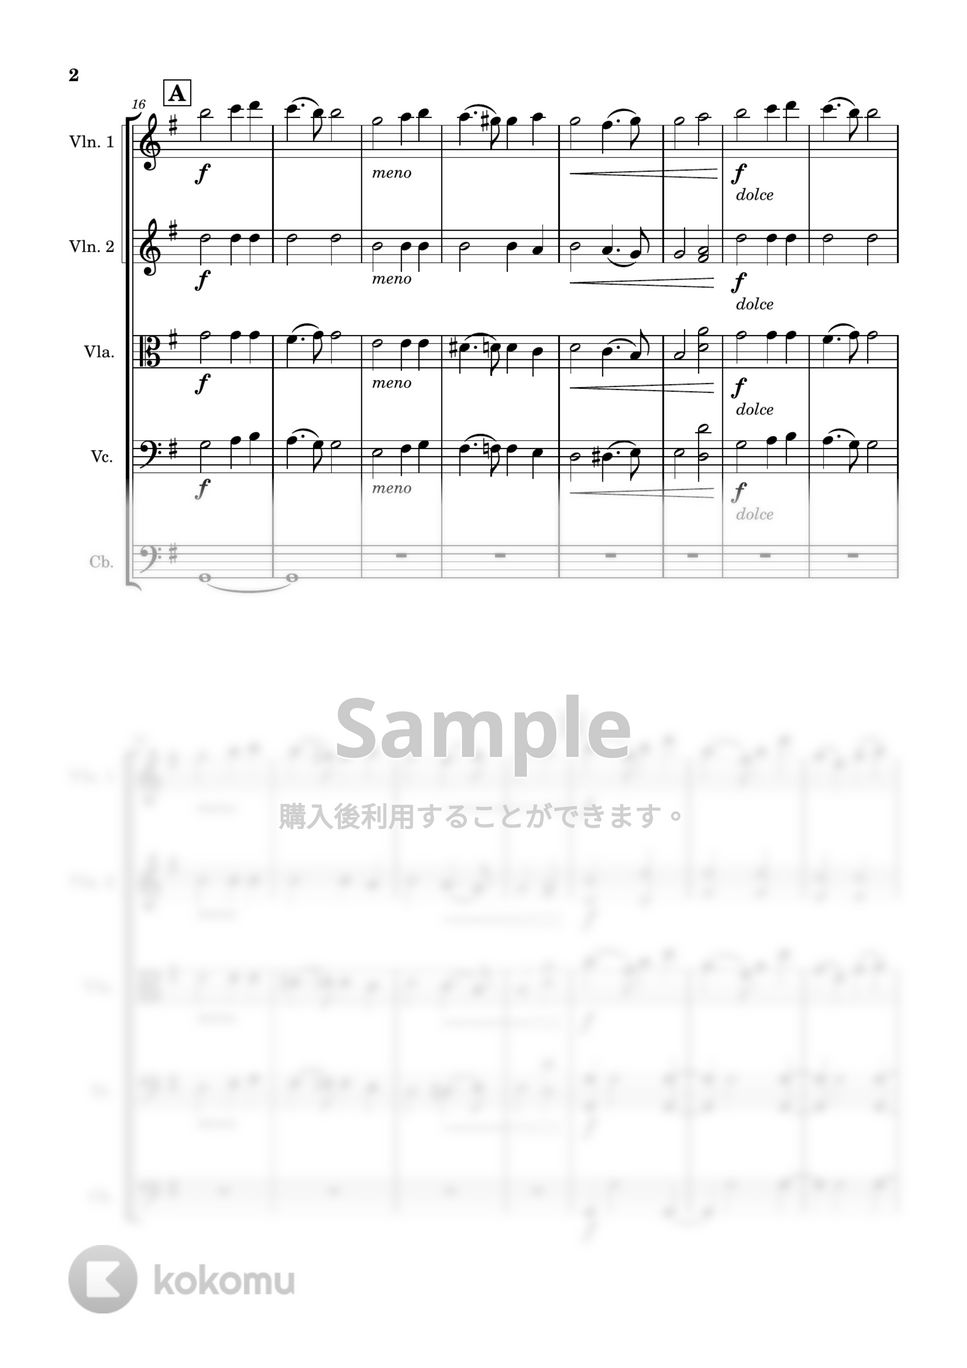 ジャン・シベリウス - アンダンテ・フェスティーボ (弦楽五重奏) by Cellotto